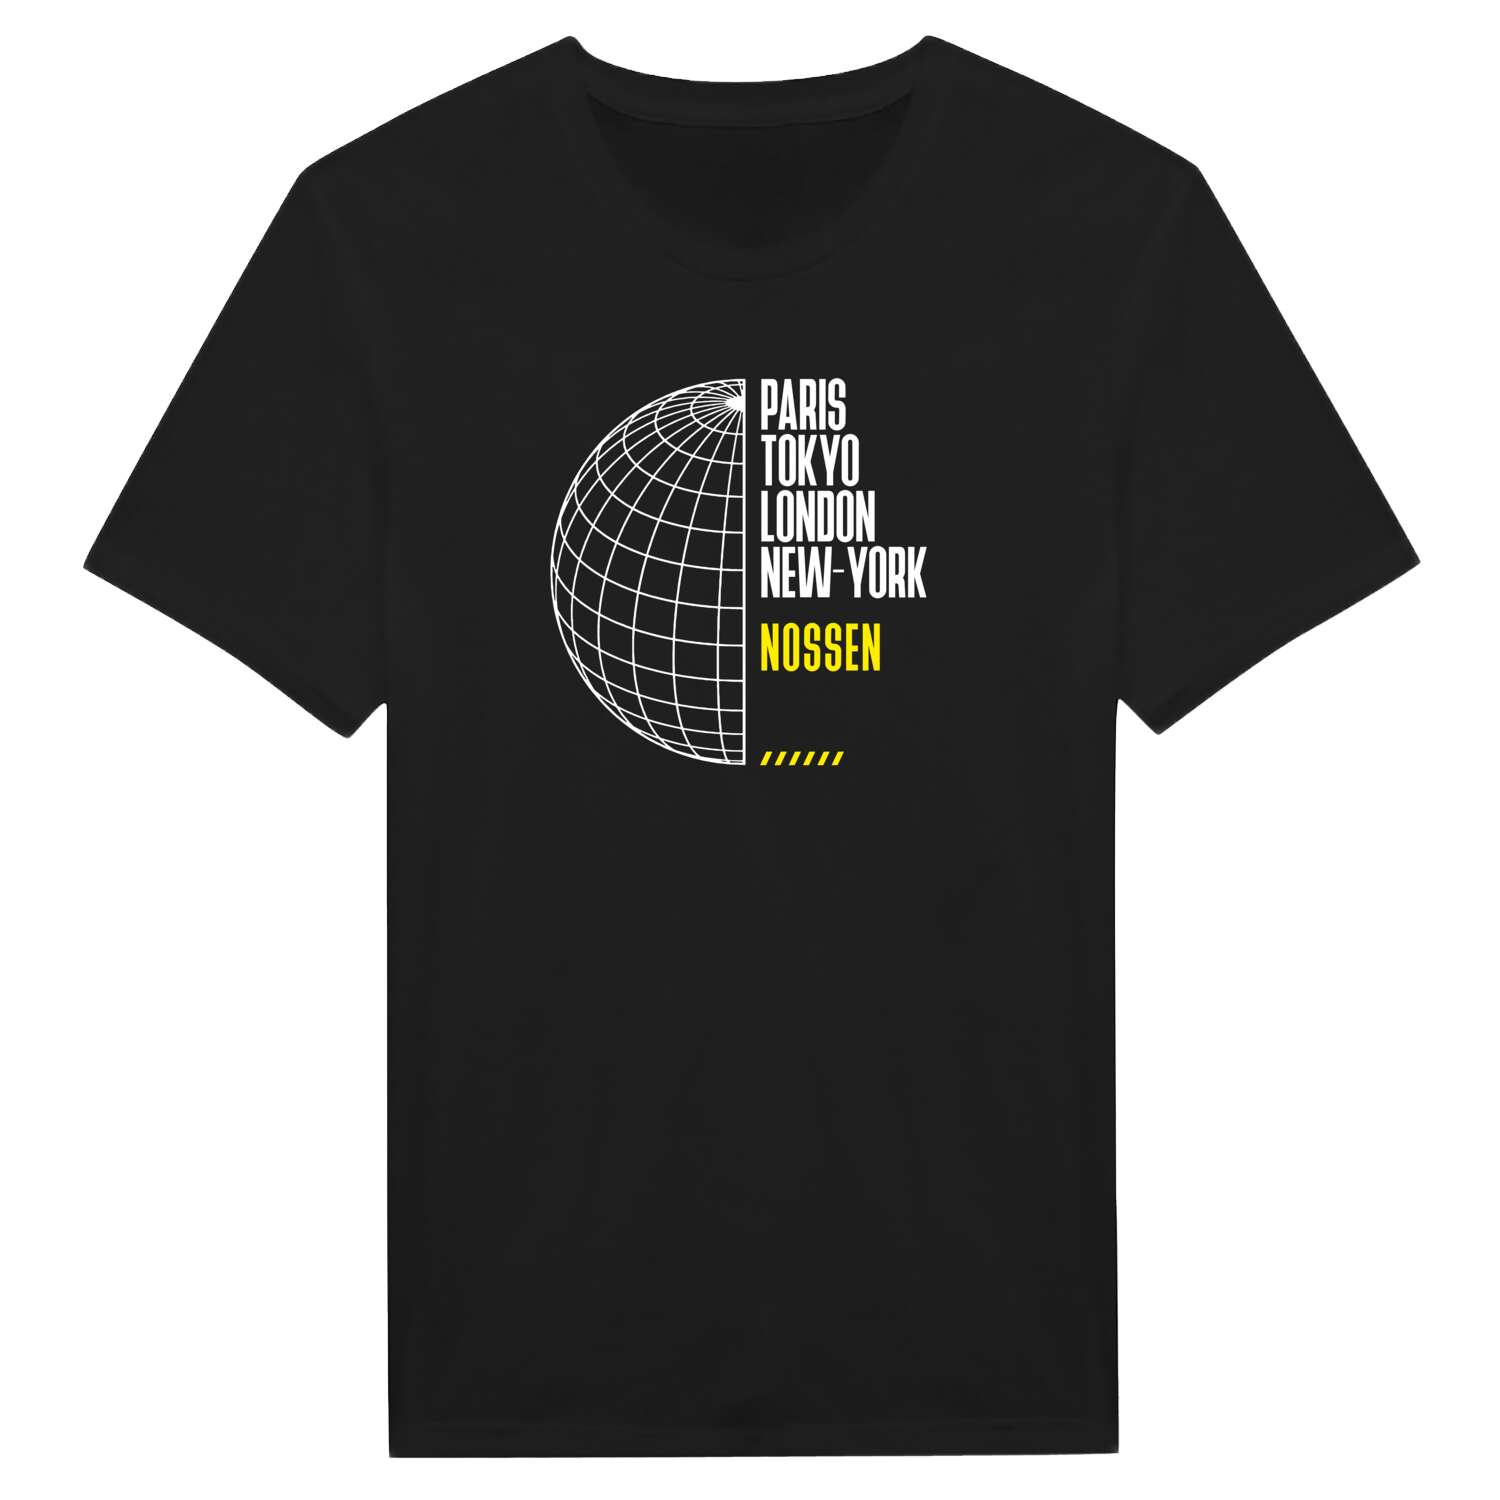 Nossen T-Shirt »Paris Tokyo London«